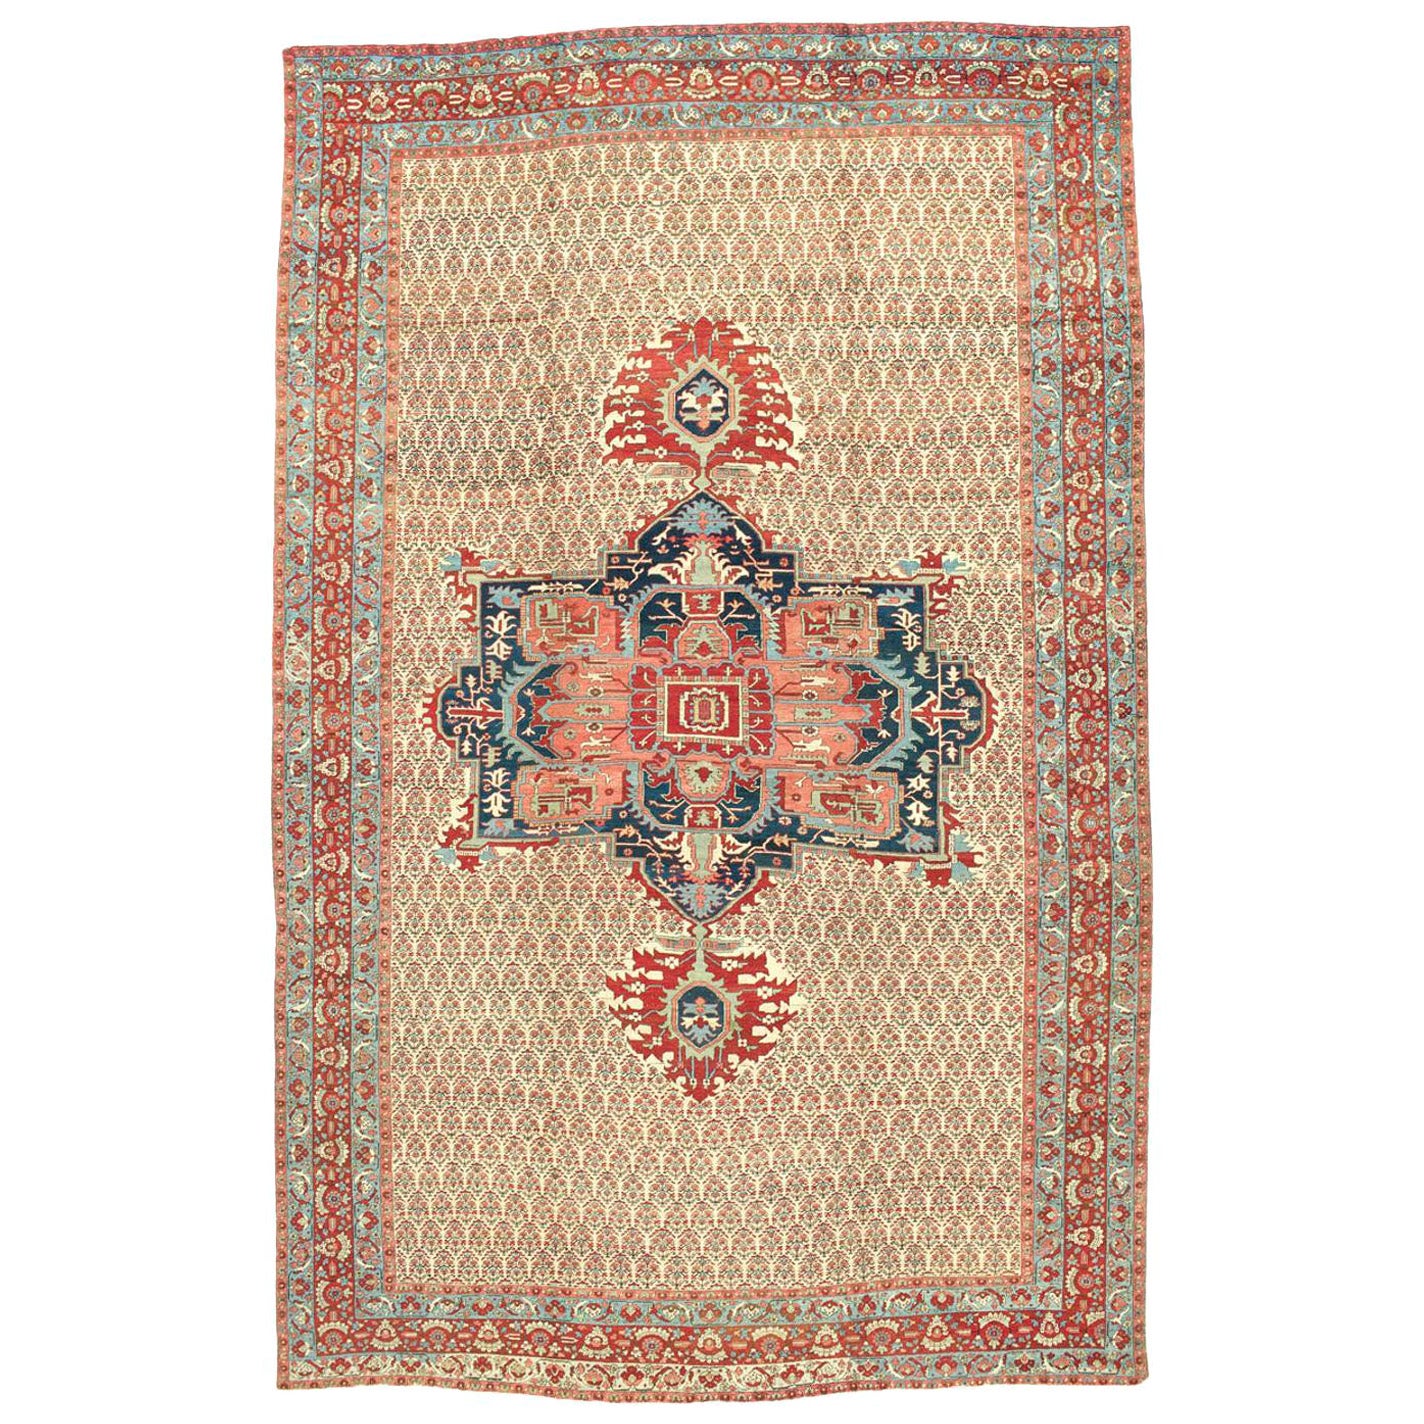 Large Antique Northwest Persian Bakhshaish Carpet, 19th Century